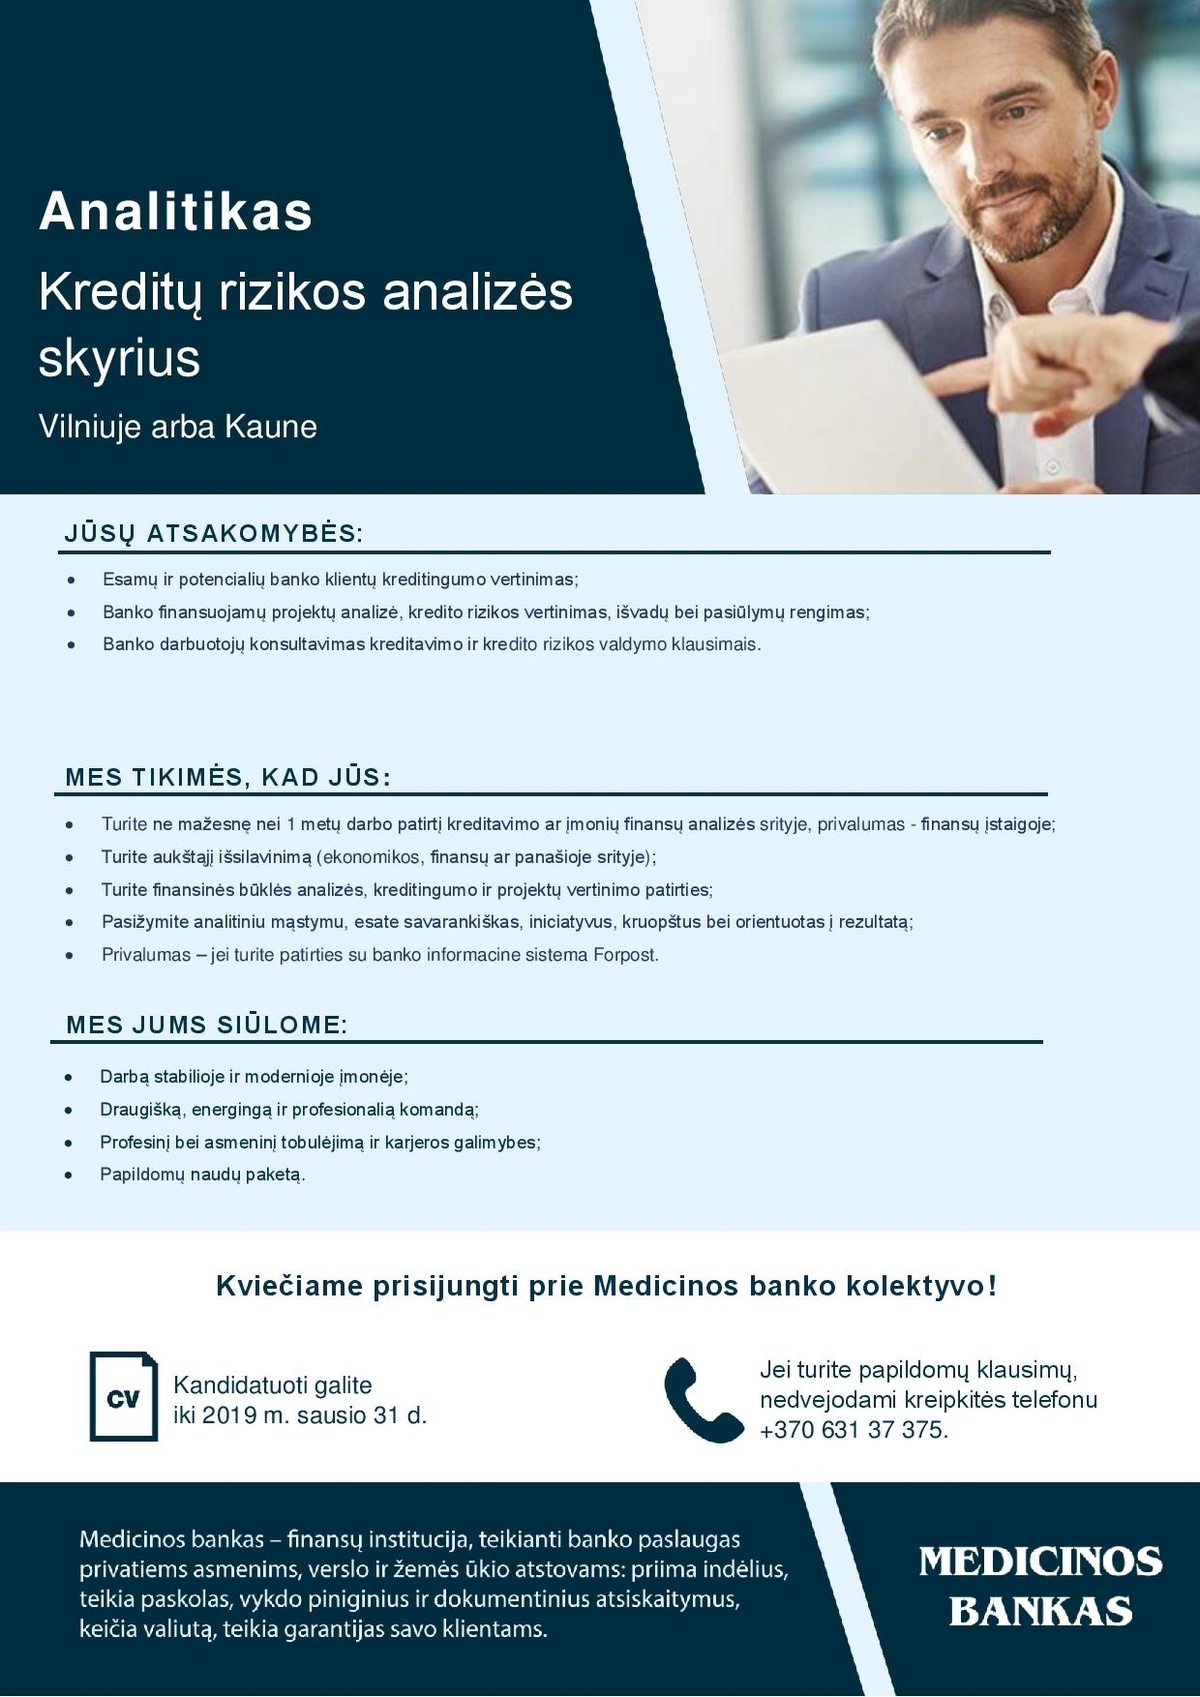 Medicinos bankas, UAB Analitikas (-ė), Kreditų rizikos analizės skyriuje (Vilniuje arba Kaune)